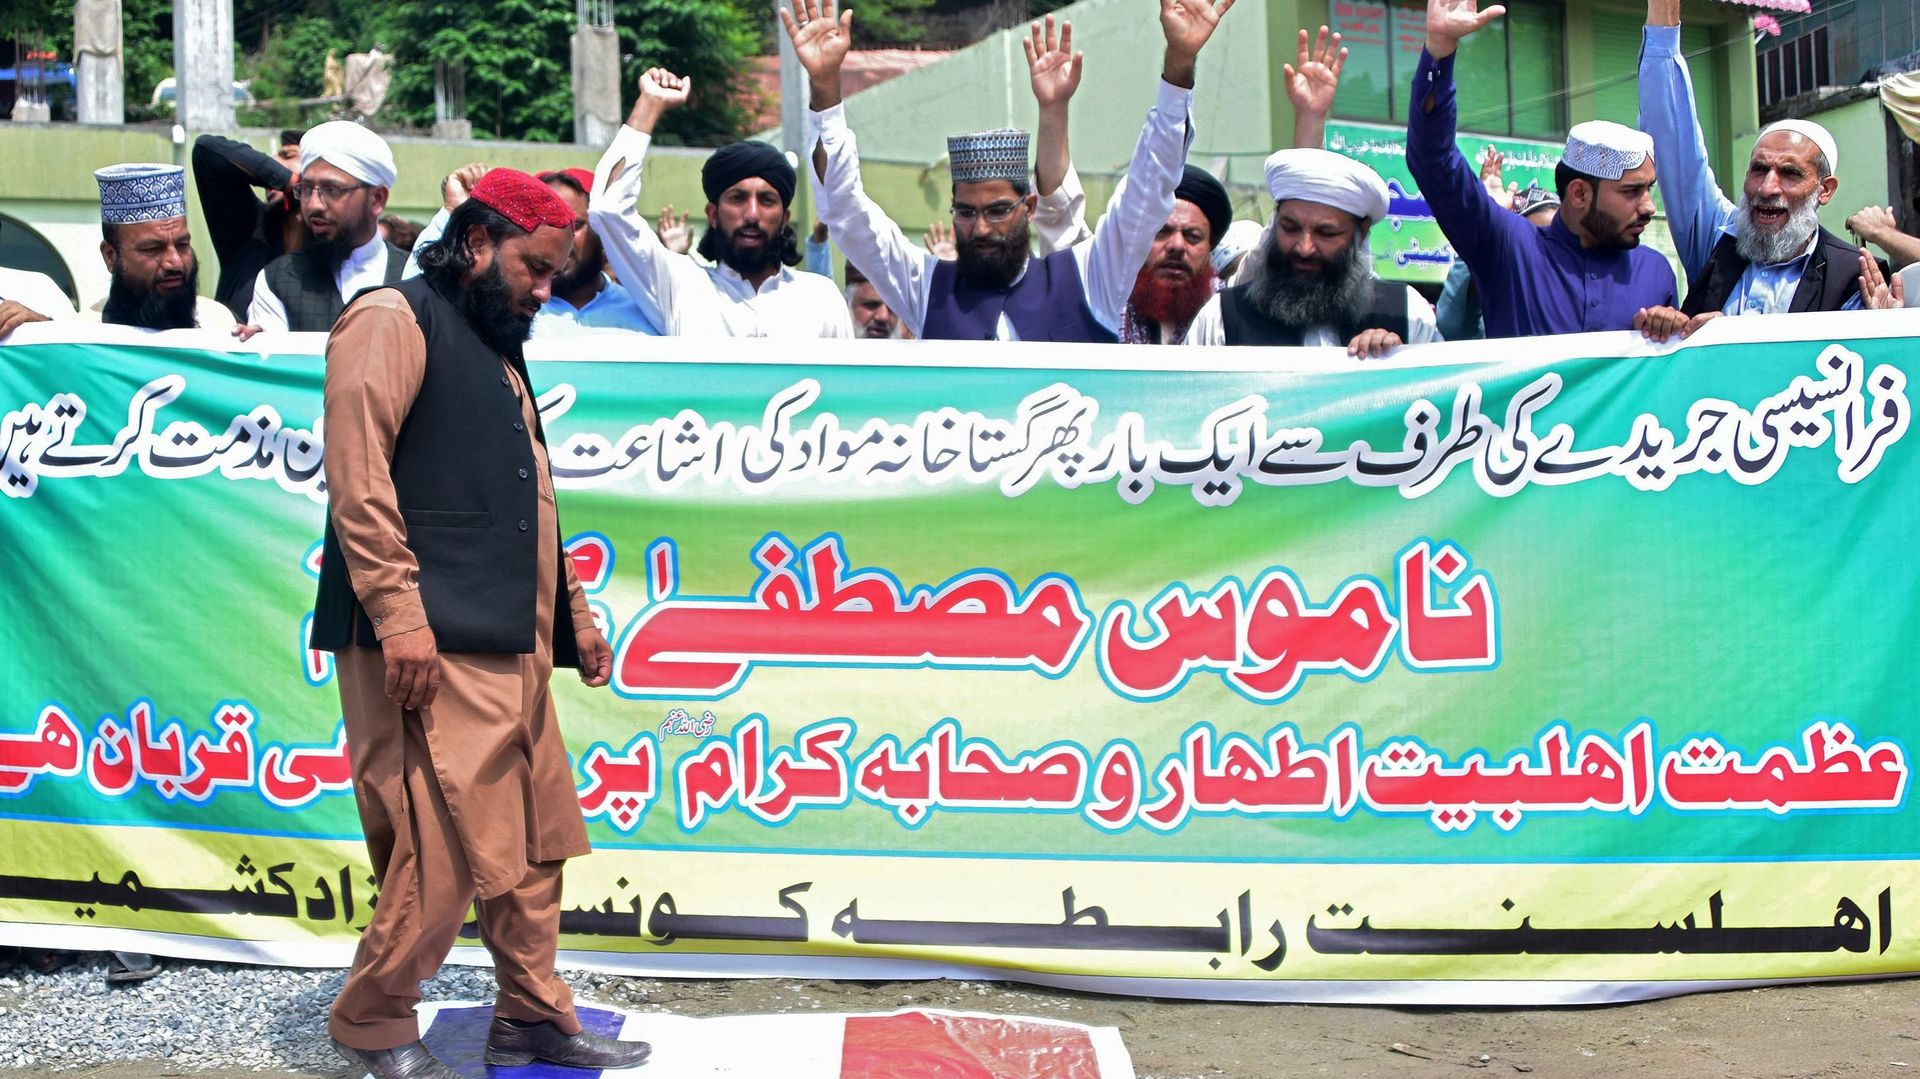 premiere-manifestation-au-pakistan-contre-la-une-de-charlie-hebdo